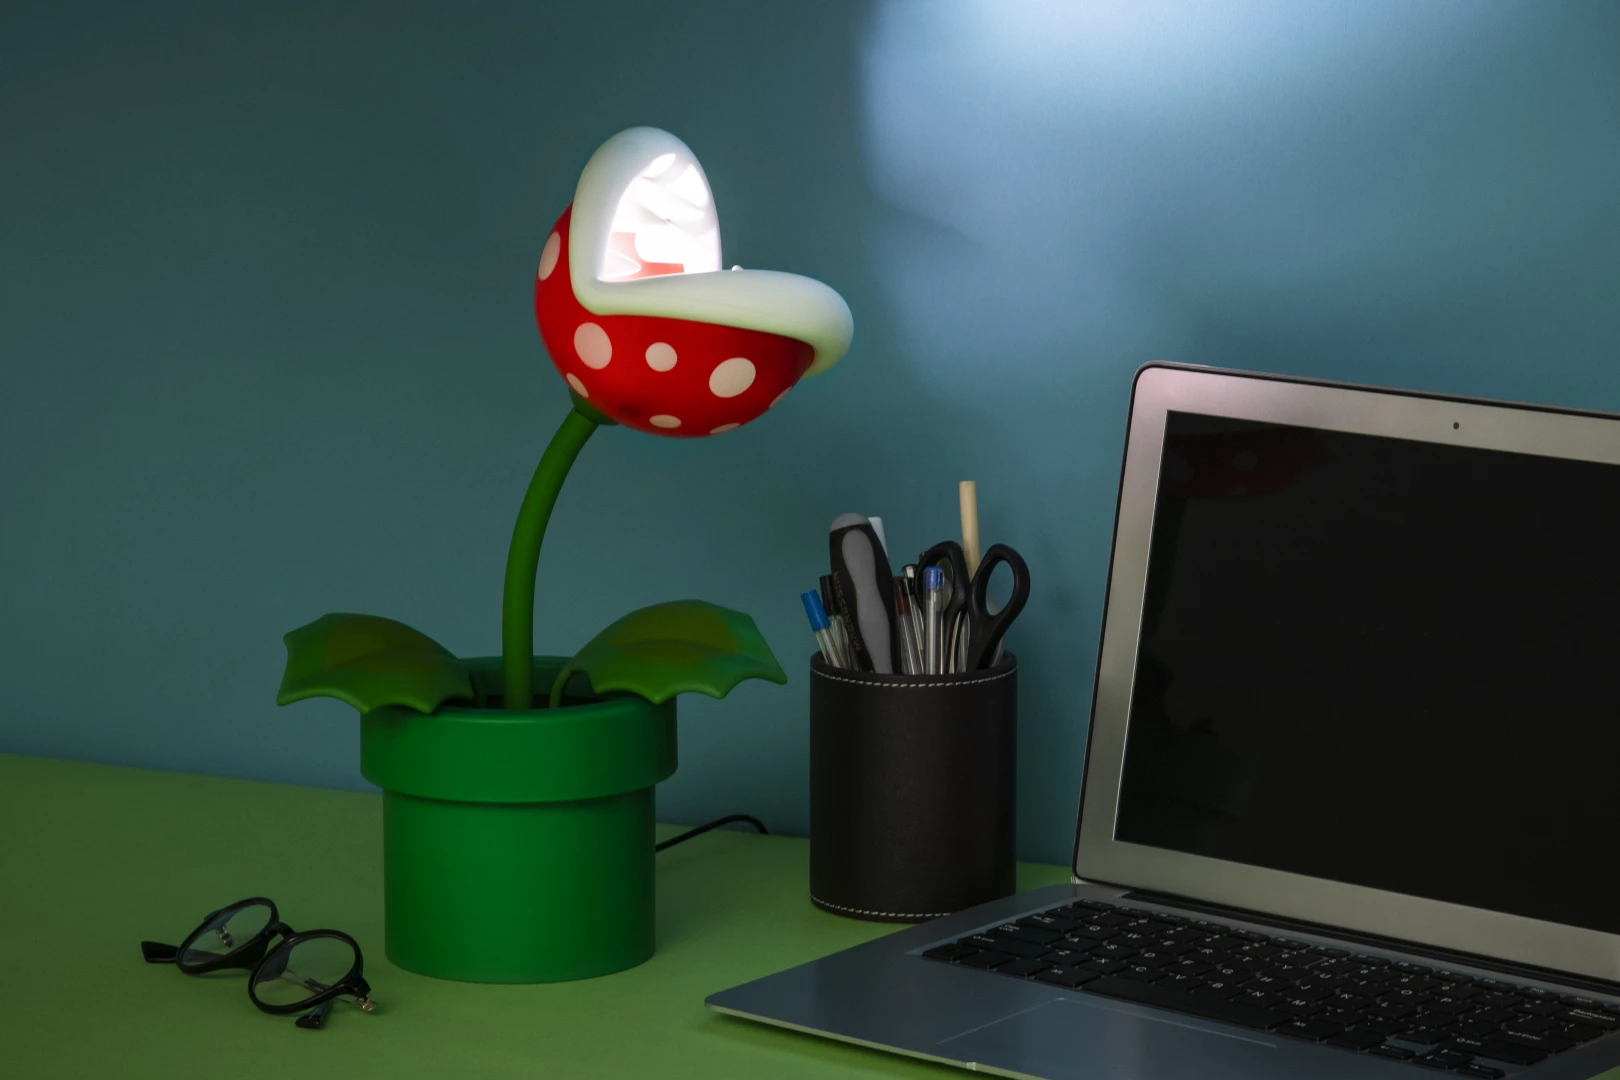 Super Mario - Piranha Plant Posable Lamp voor de Merchandise kopen op nedgame.nl